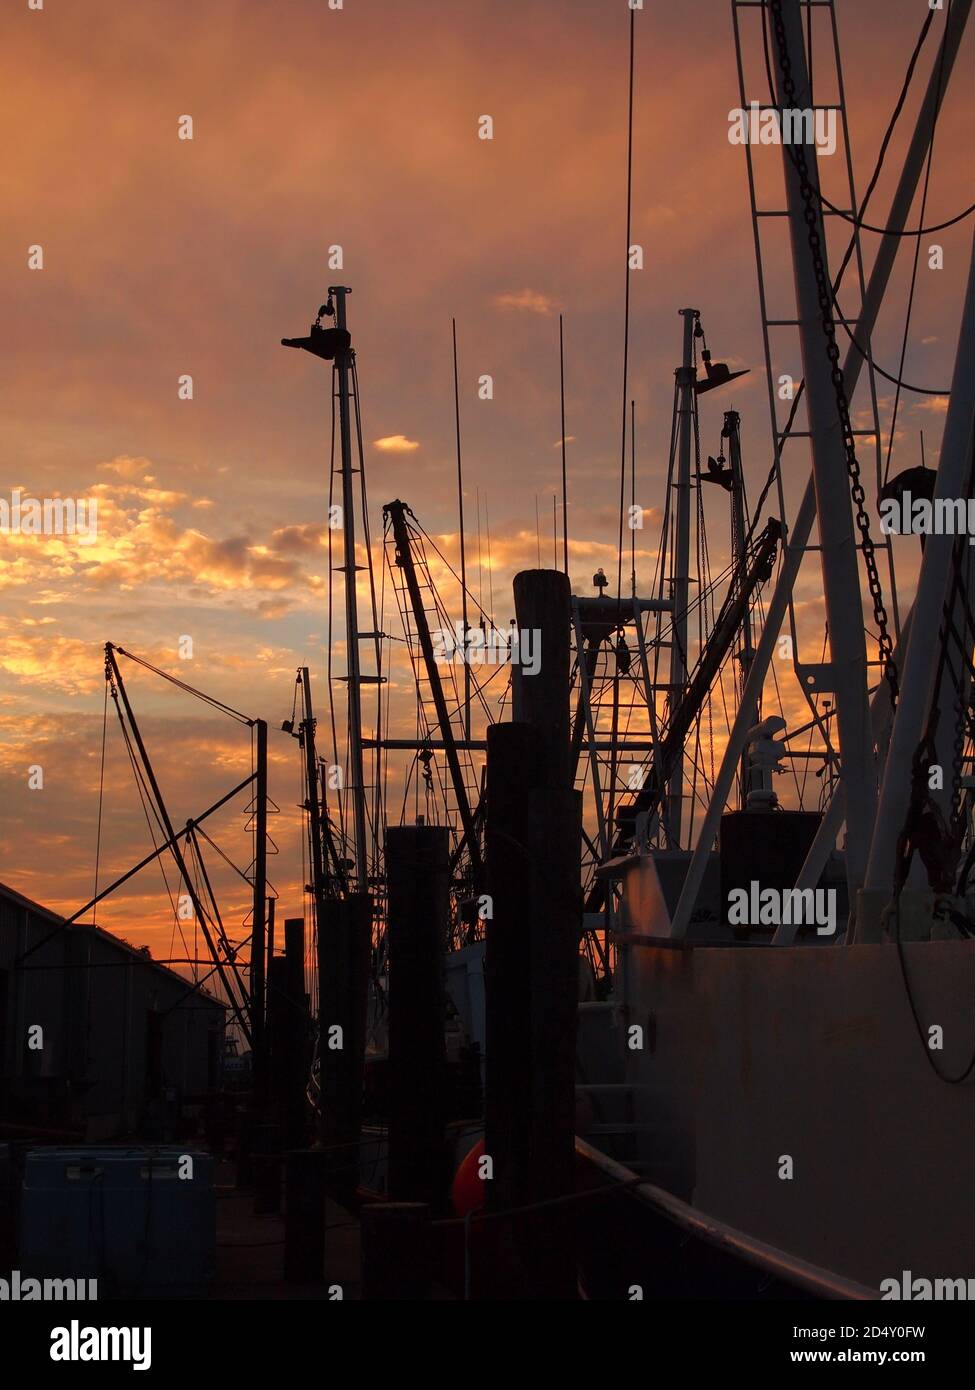 Fischerboot Takeling in tiefe Silhouette nach Sonnenuntergang gegen einen warmen Himmel mit roten, gelben und orangen Wolken. Stockfoto